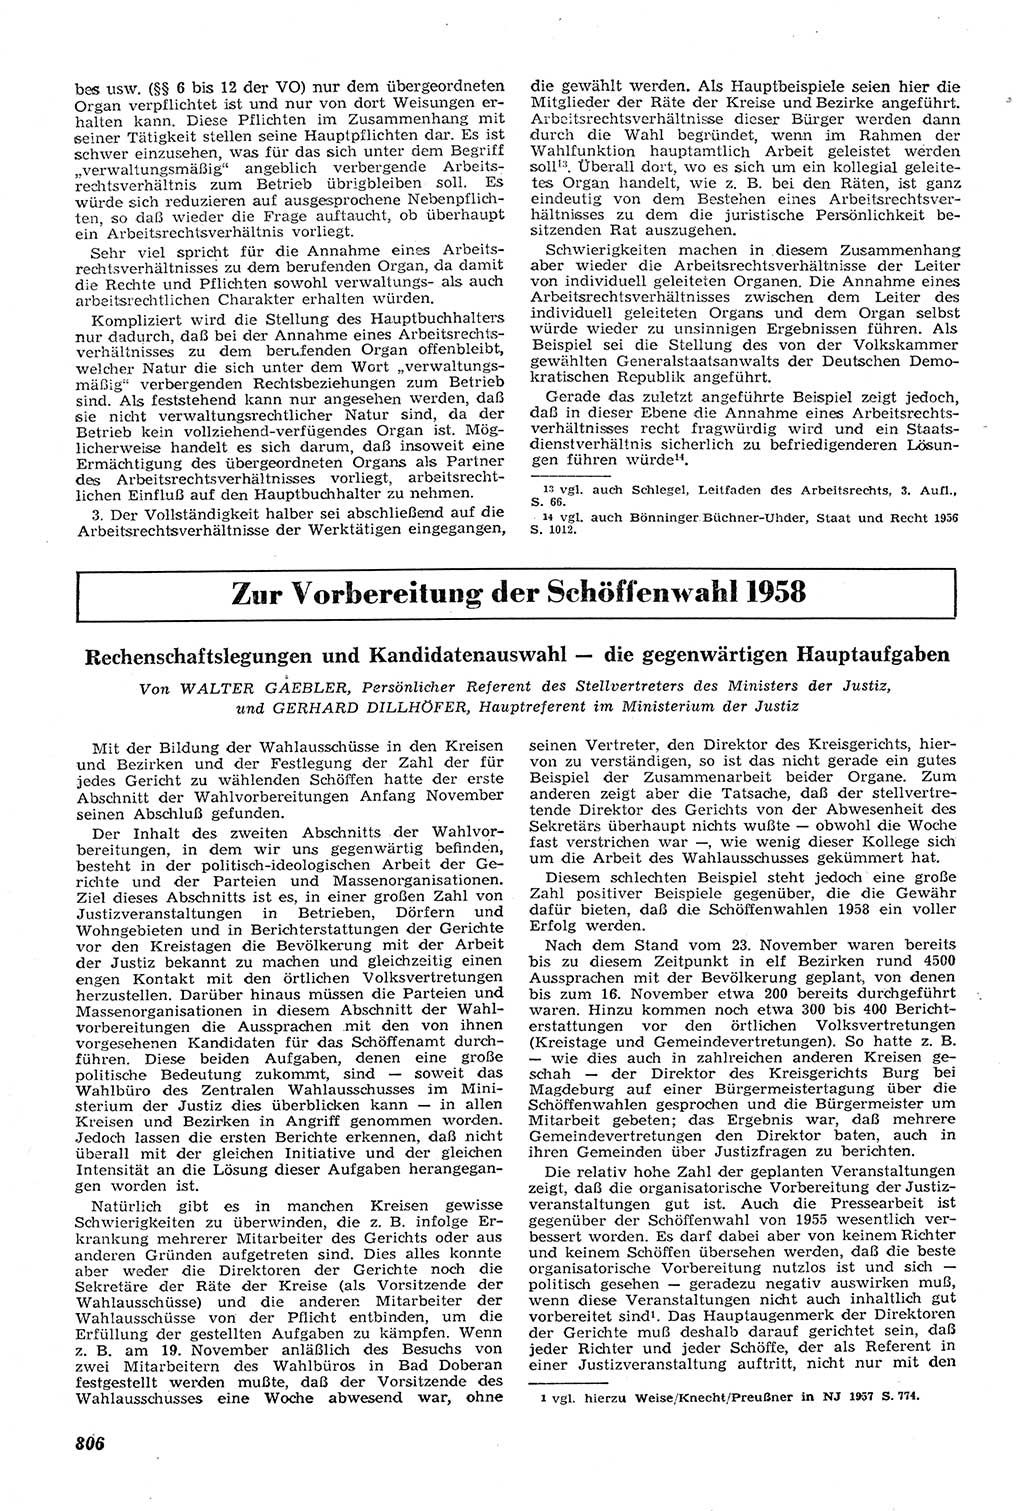 Neue Justiz (NJ), Zeitschrift für Recht und Rechtswissenschaft [Deutsche Demokratische Republik (DDR)], 11. Jahrgang 1957, Seite 806 (NJ DDR 1957, S. 806)